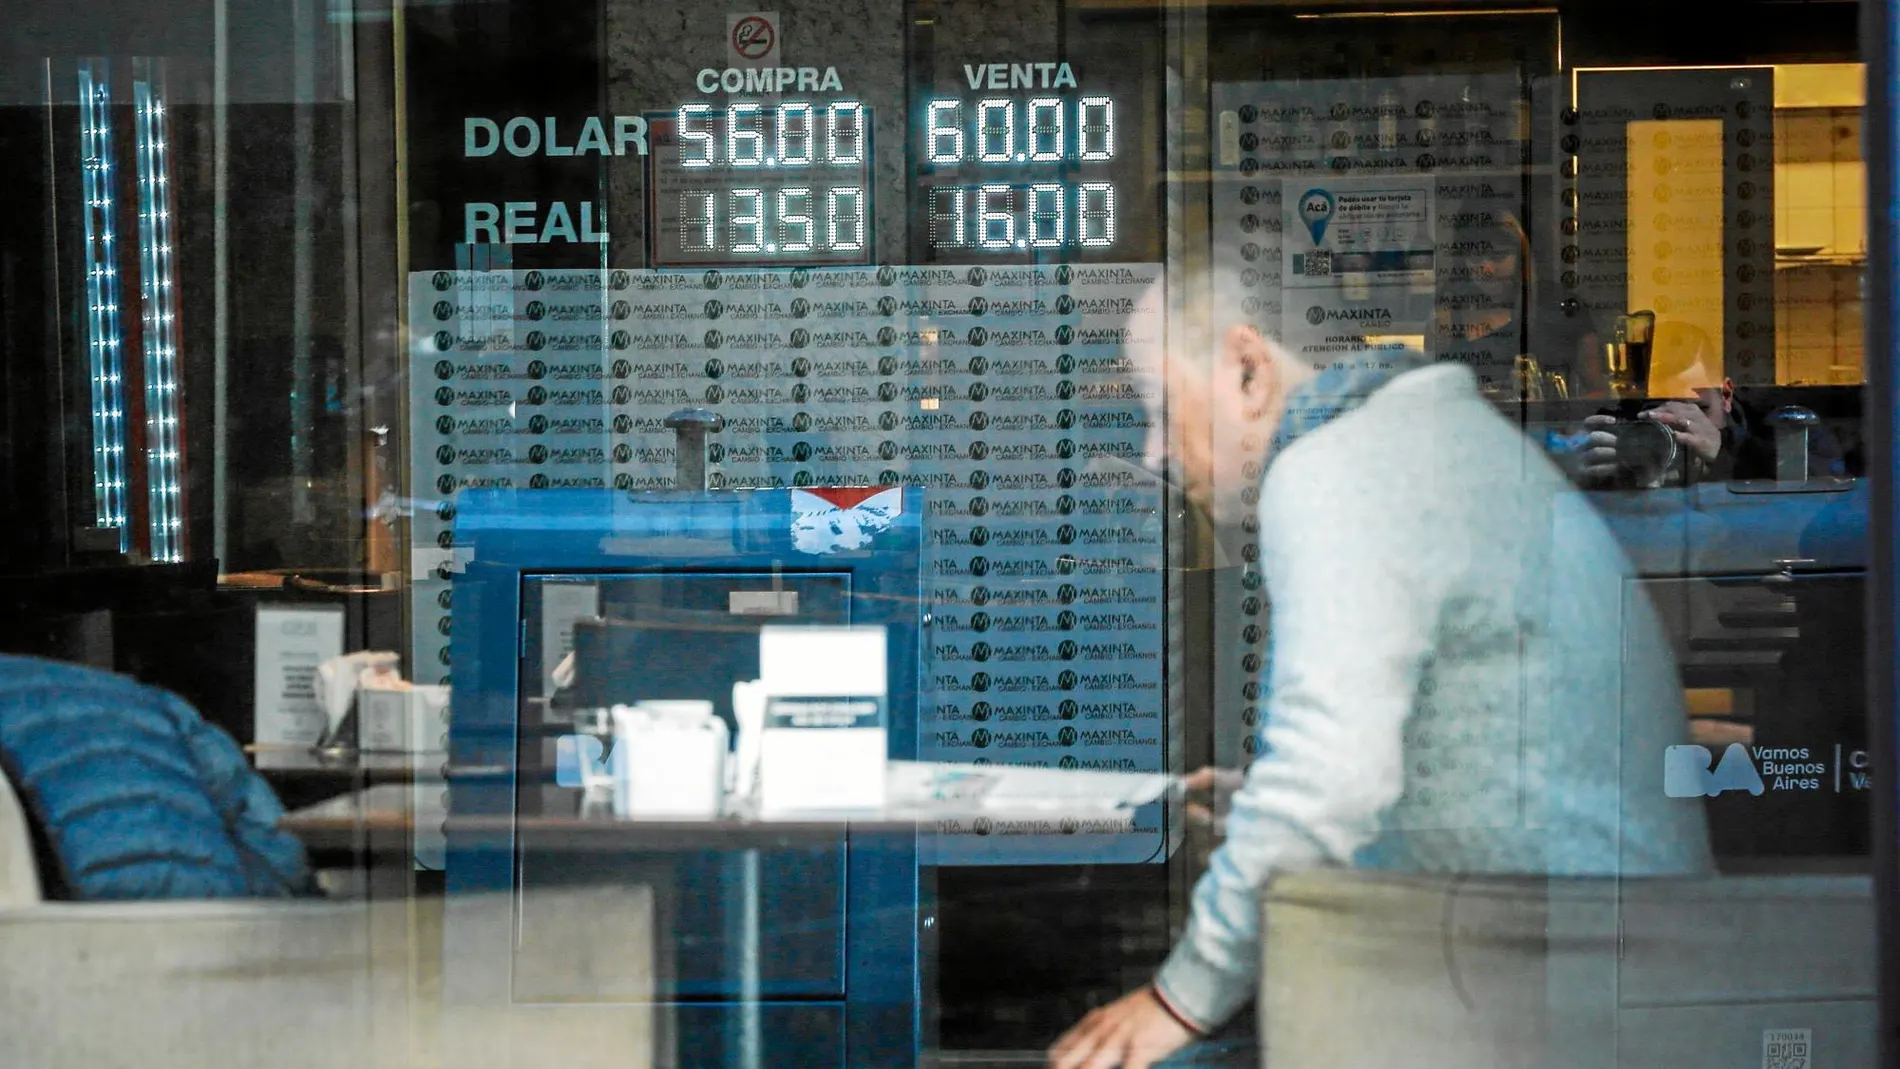 Un hombre lee en un bar frente a una pizarra con el valor del dólar y del real en otra jornada de incertidumbre en Argentina